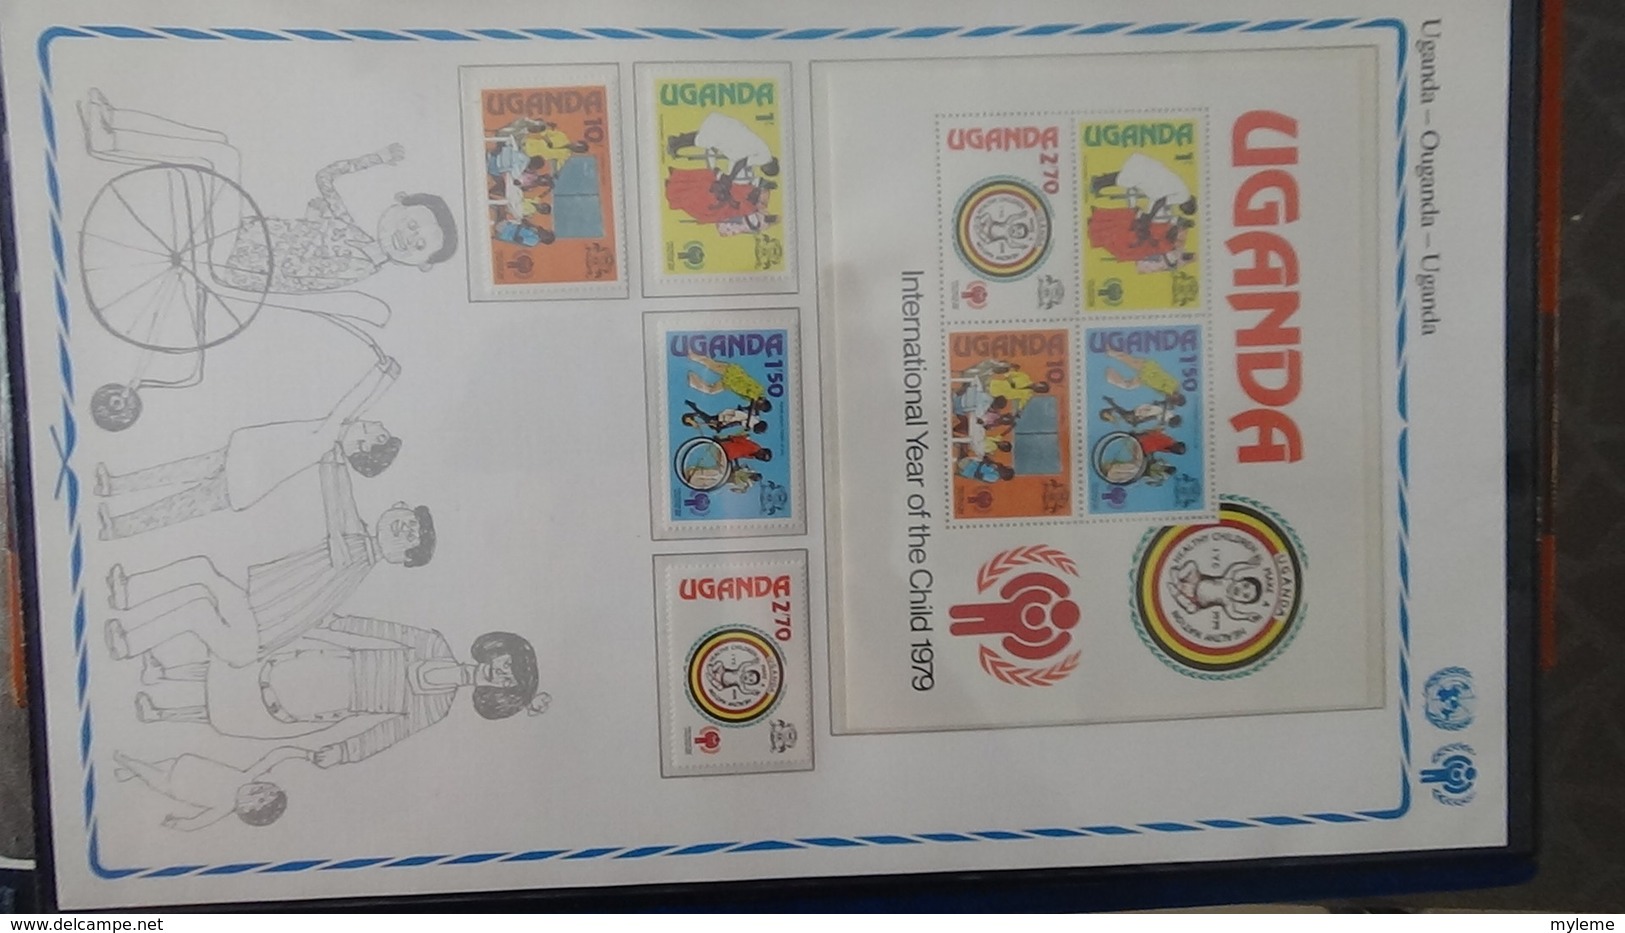 Très beau classeur UNICEF/NATIONS UNIES   avec timbres et blocs ** sur le thème de l'enfant. A saisir !!!